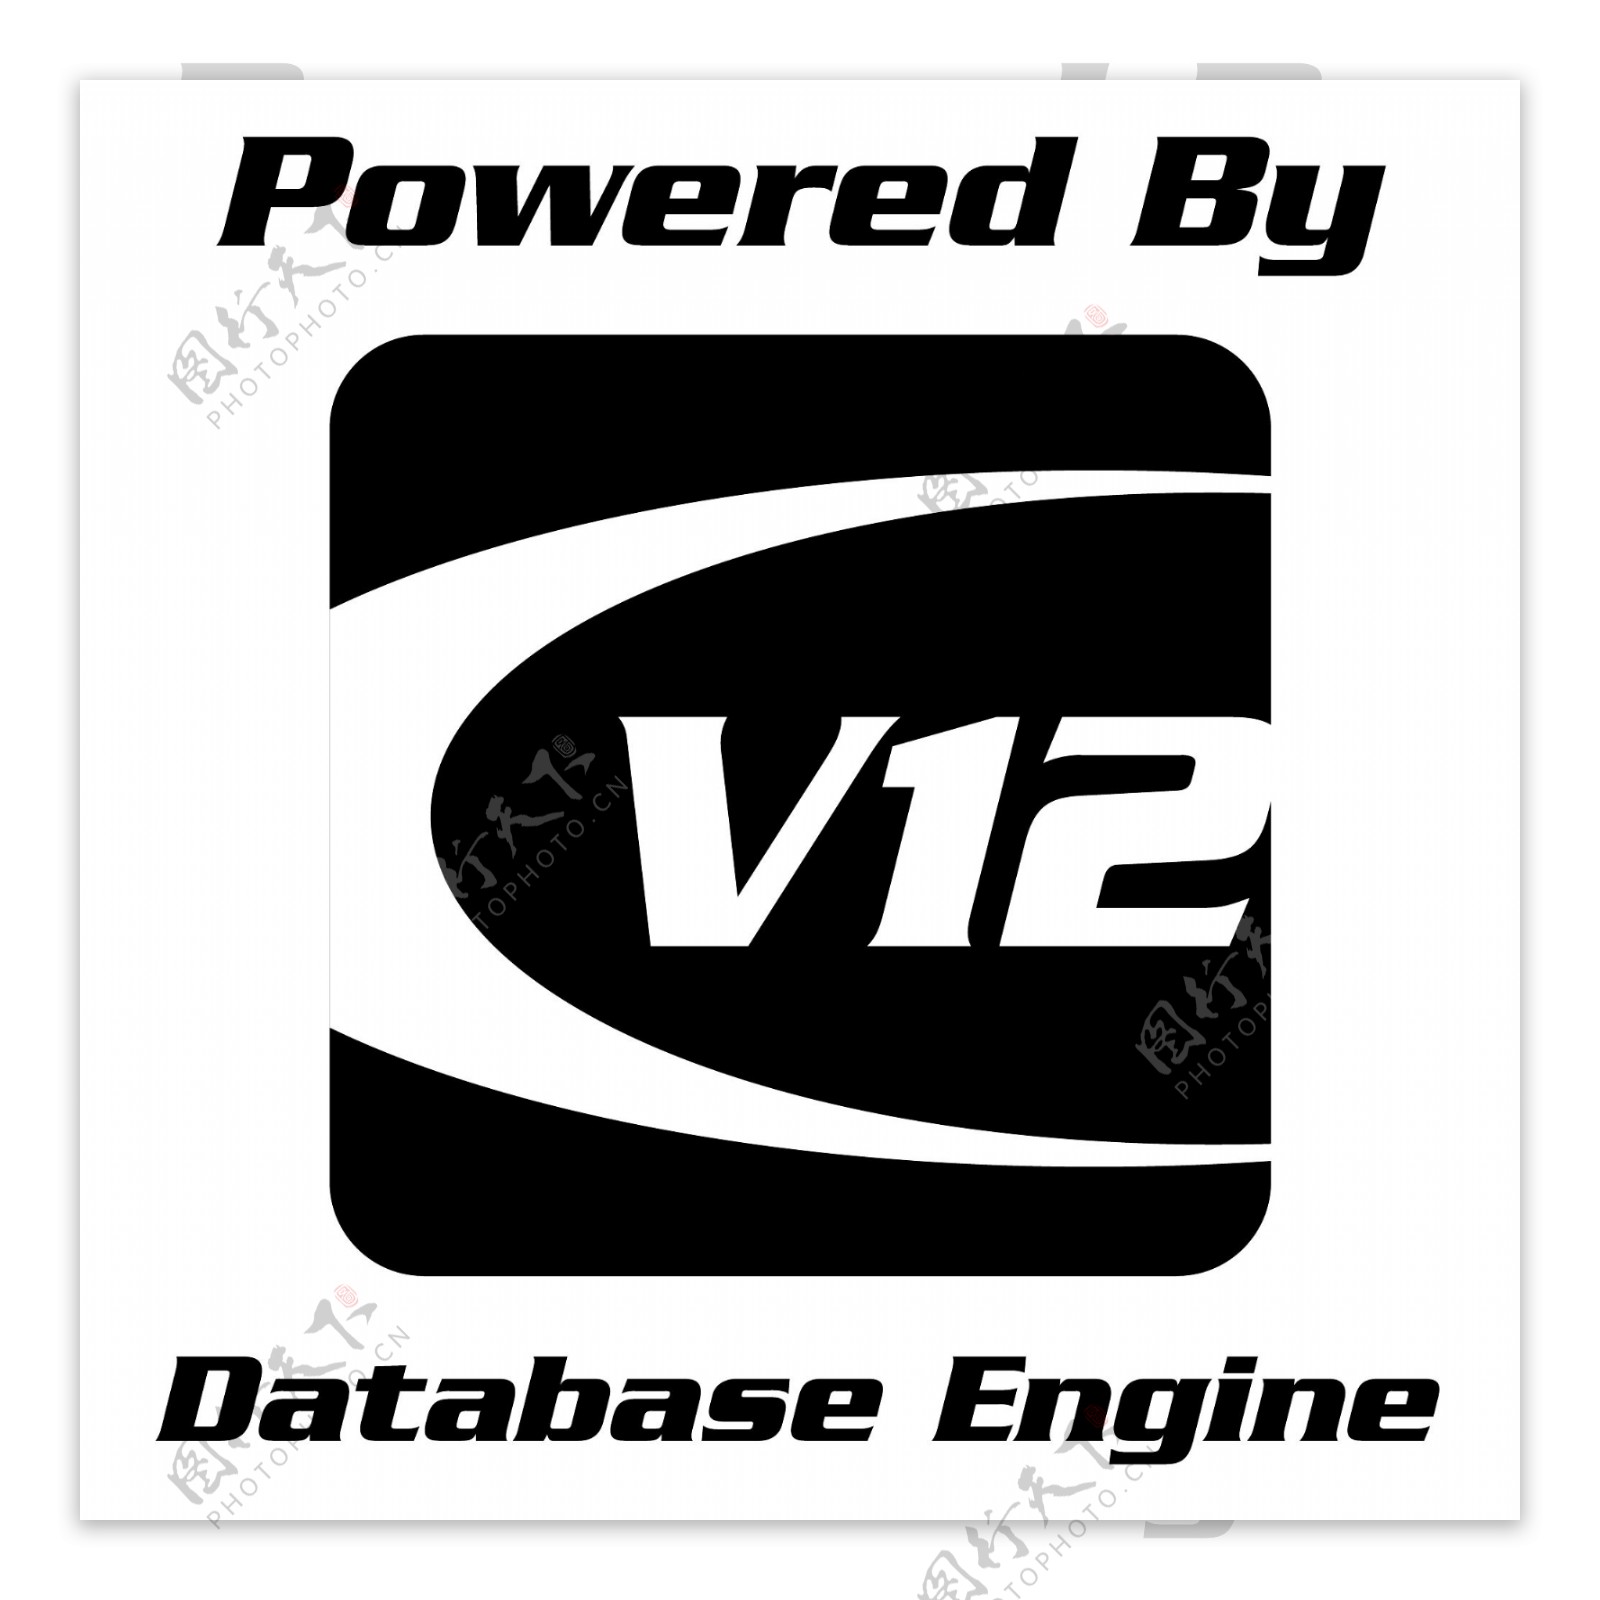 的V12数据库引擎